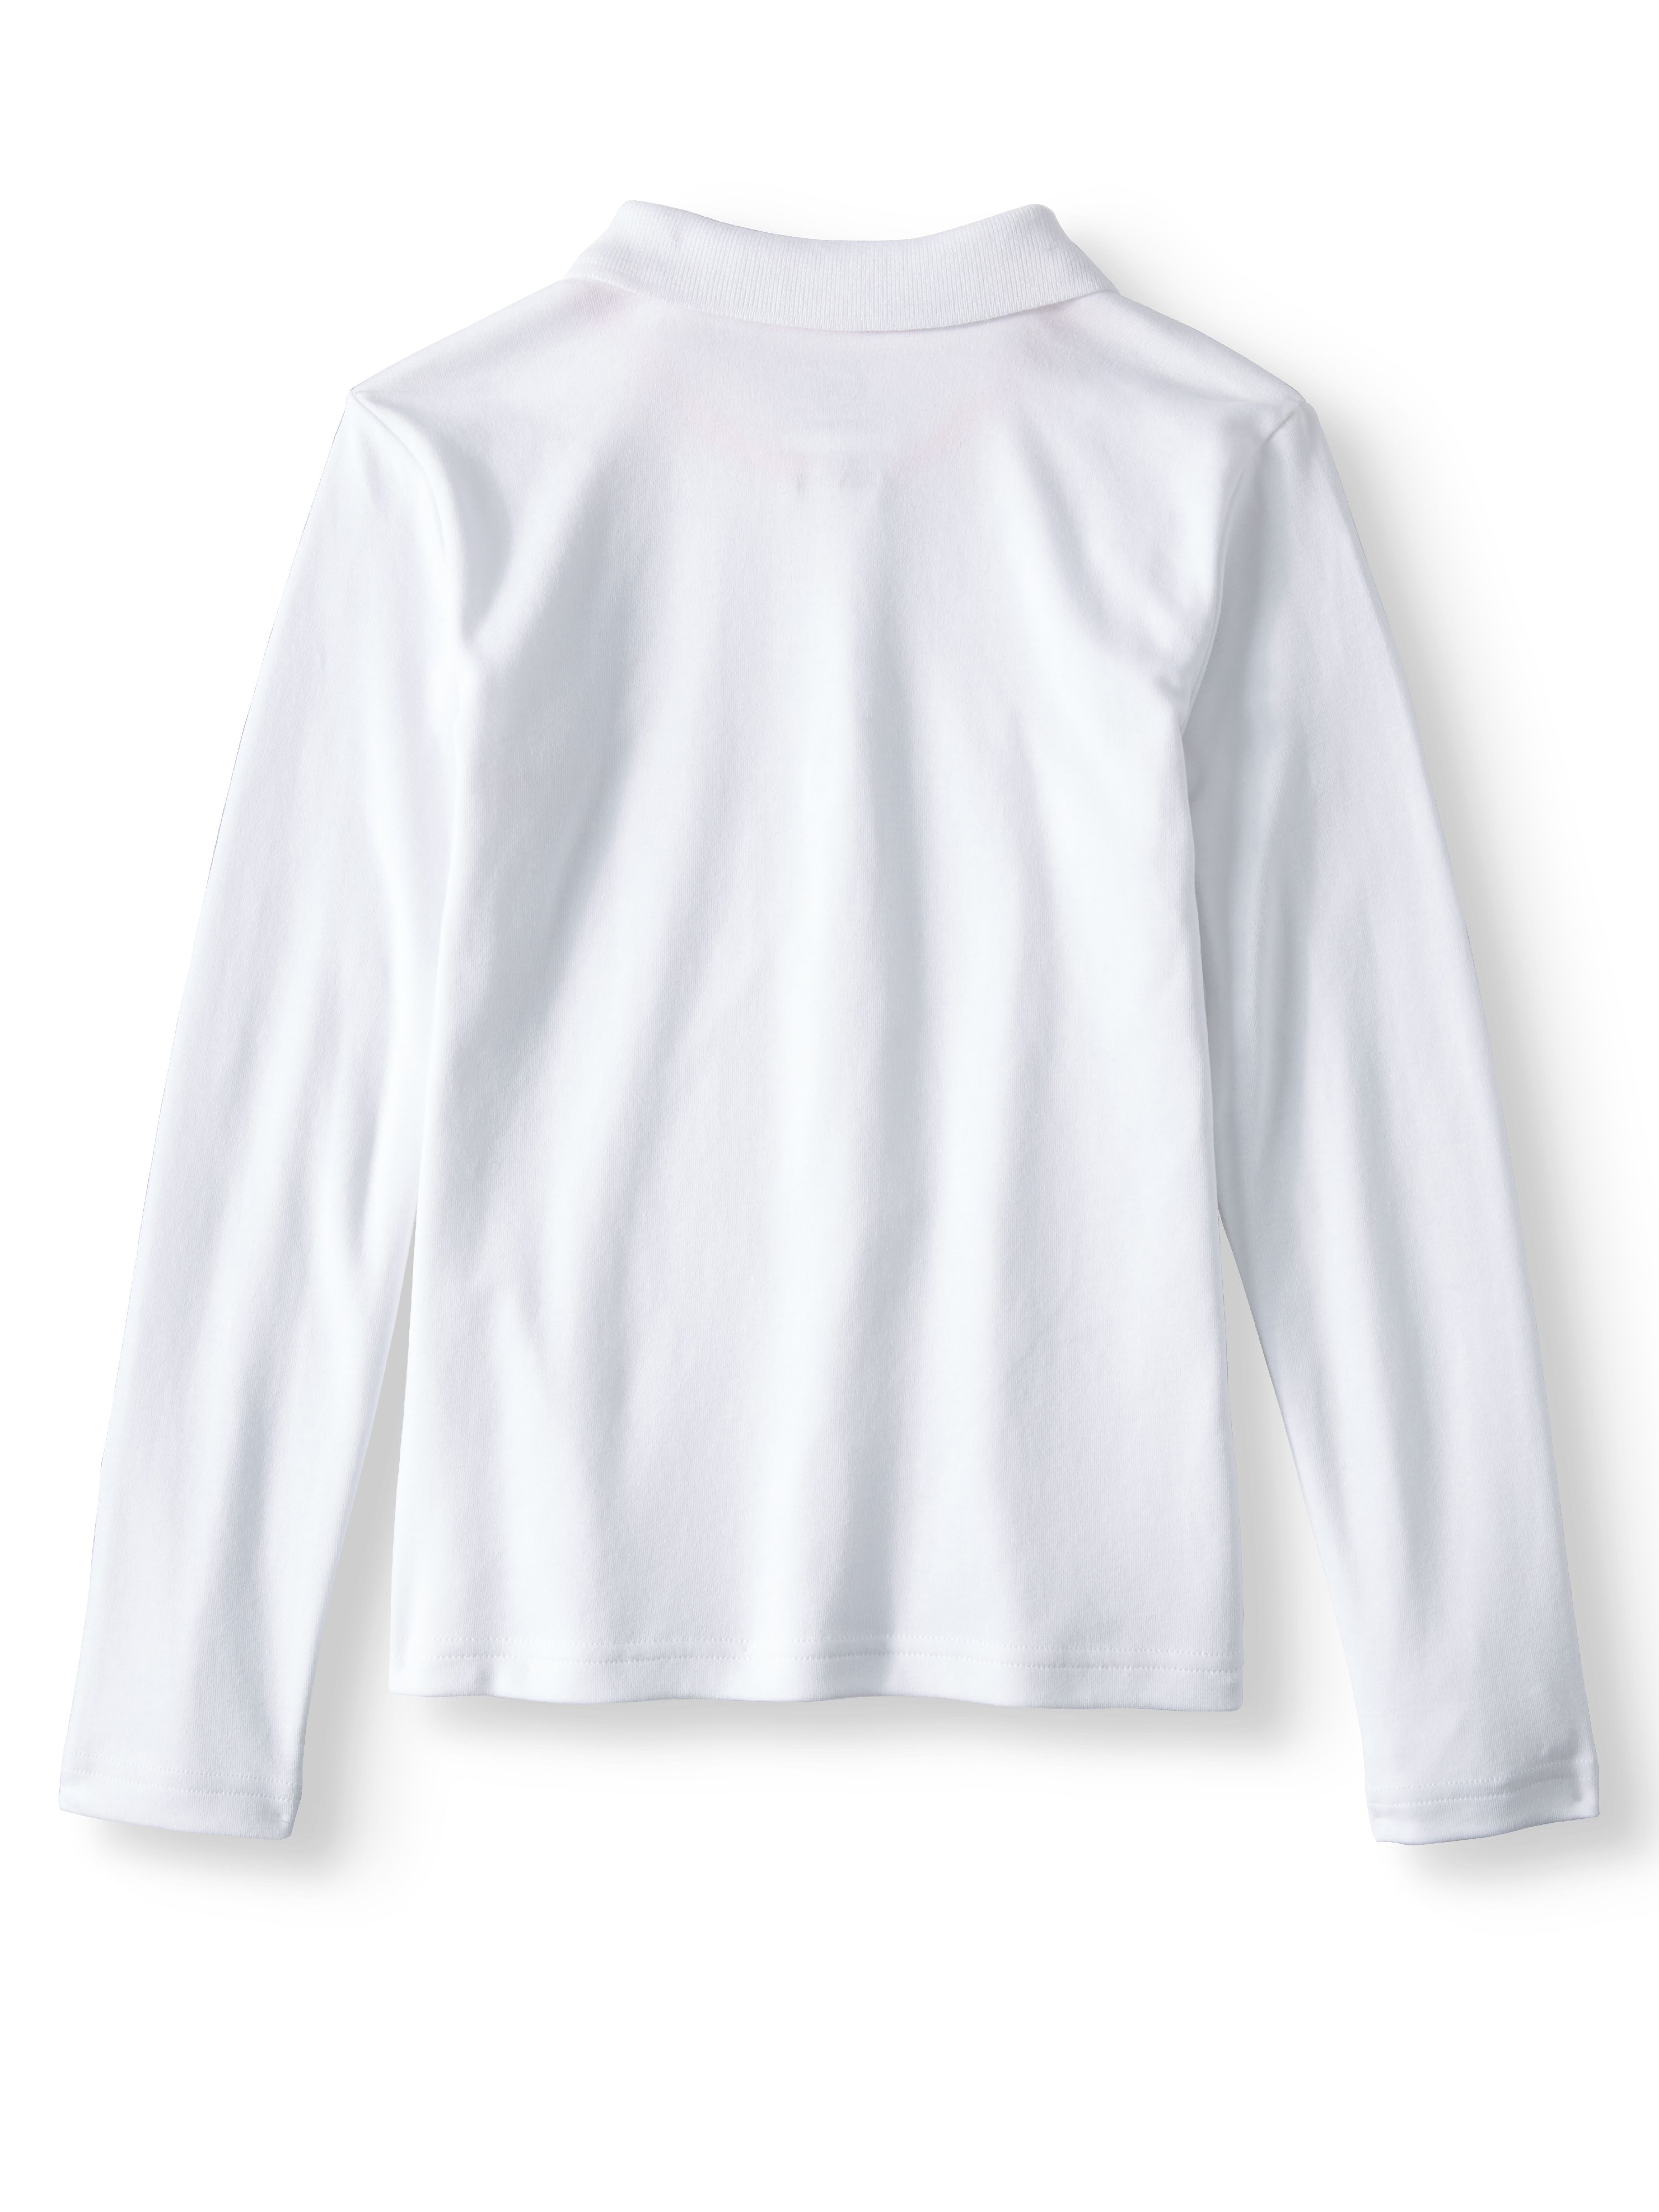 Wonder Nation Girls School Uniform Long Sleeve Interlock Polo Shirt, 4-Pack Value Bundle, Sizes 4-18 - image 6 of 7